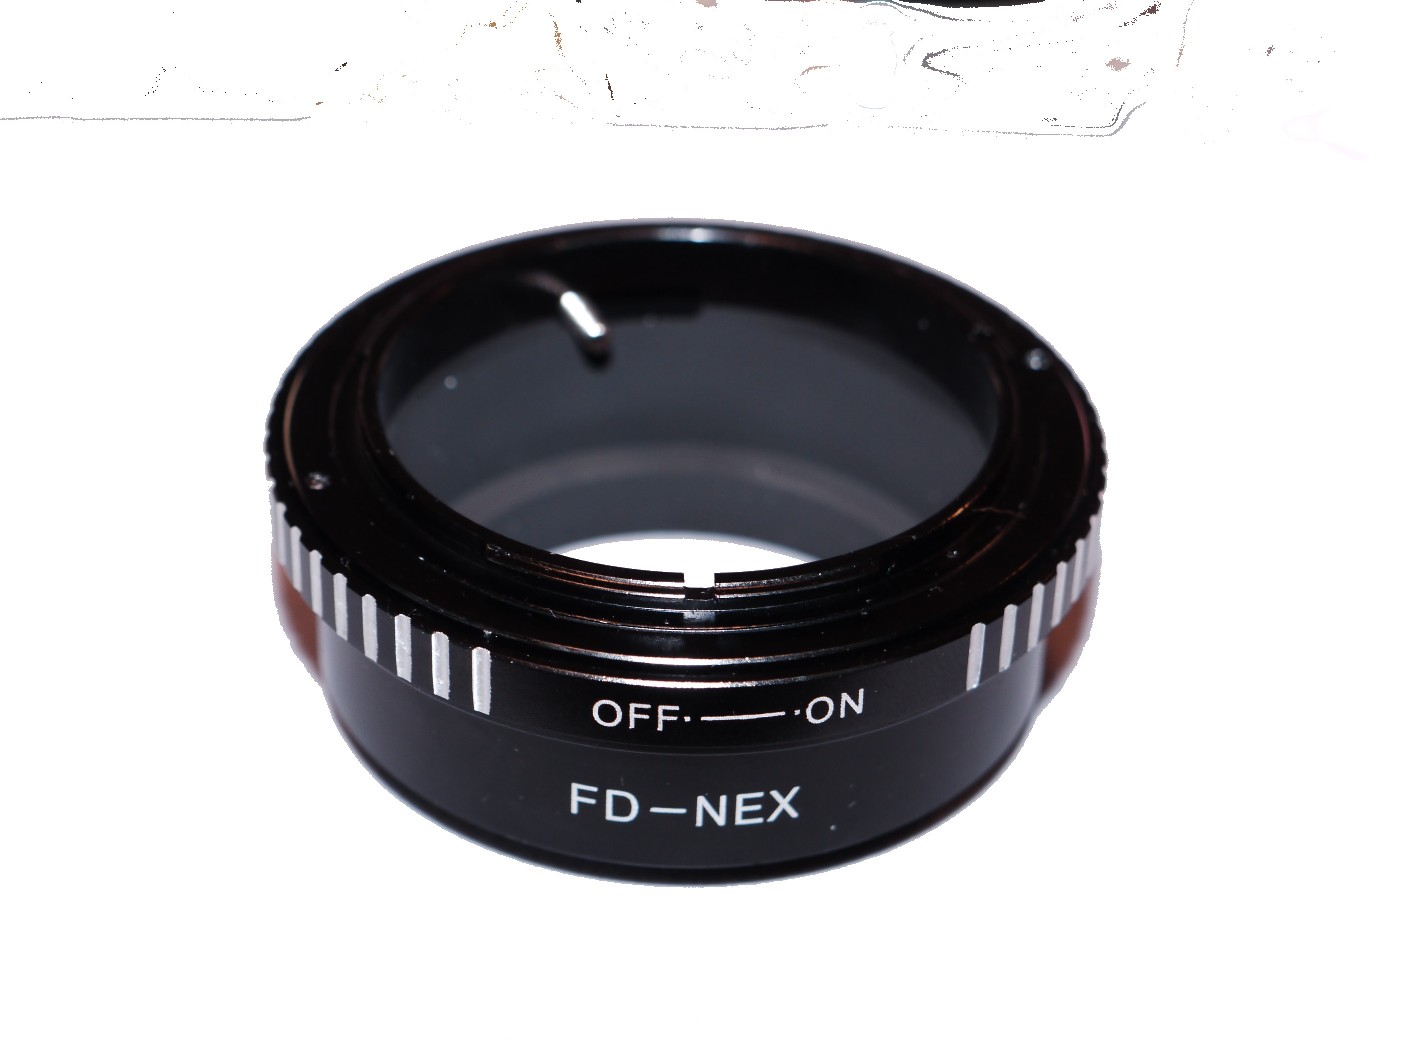 Canon FD lens to Sony NEX Camera Body Adapter